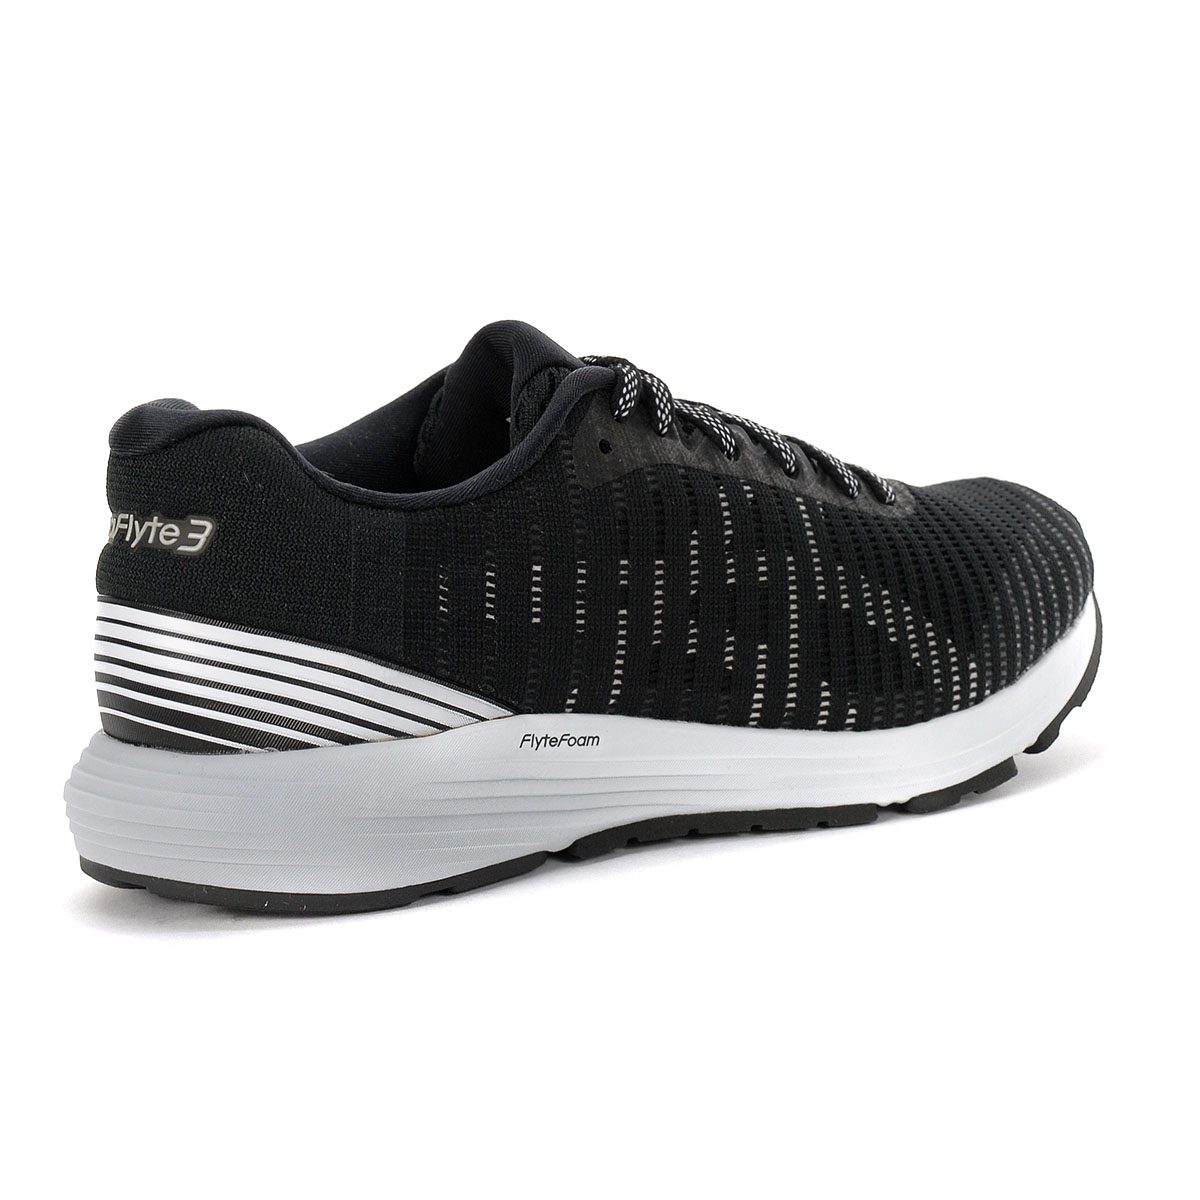 ASICS Women's Dynaflyte 3 Black/White Running Shoes 1012A002.001 ...